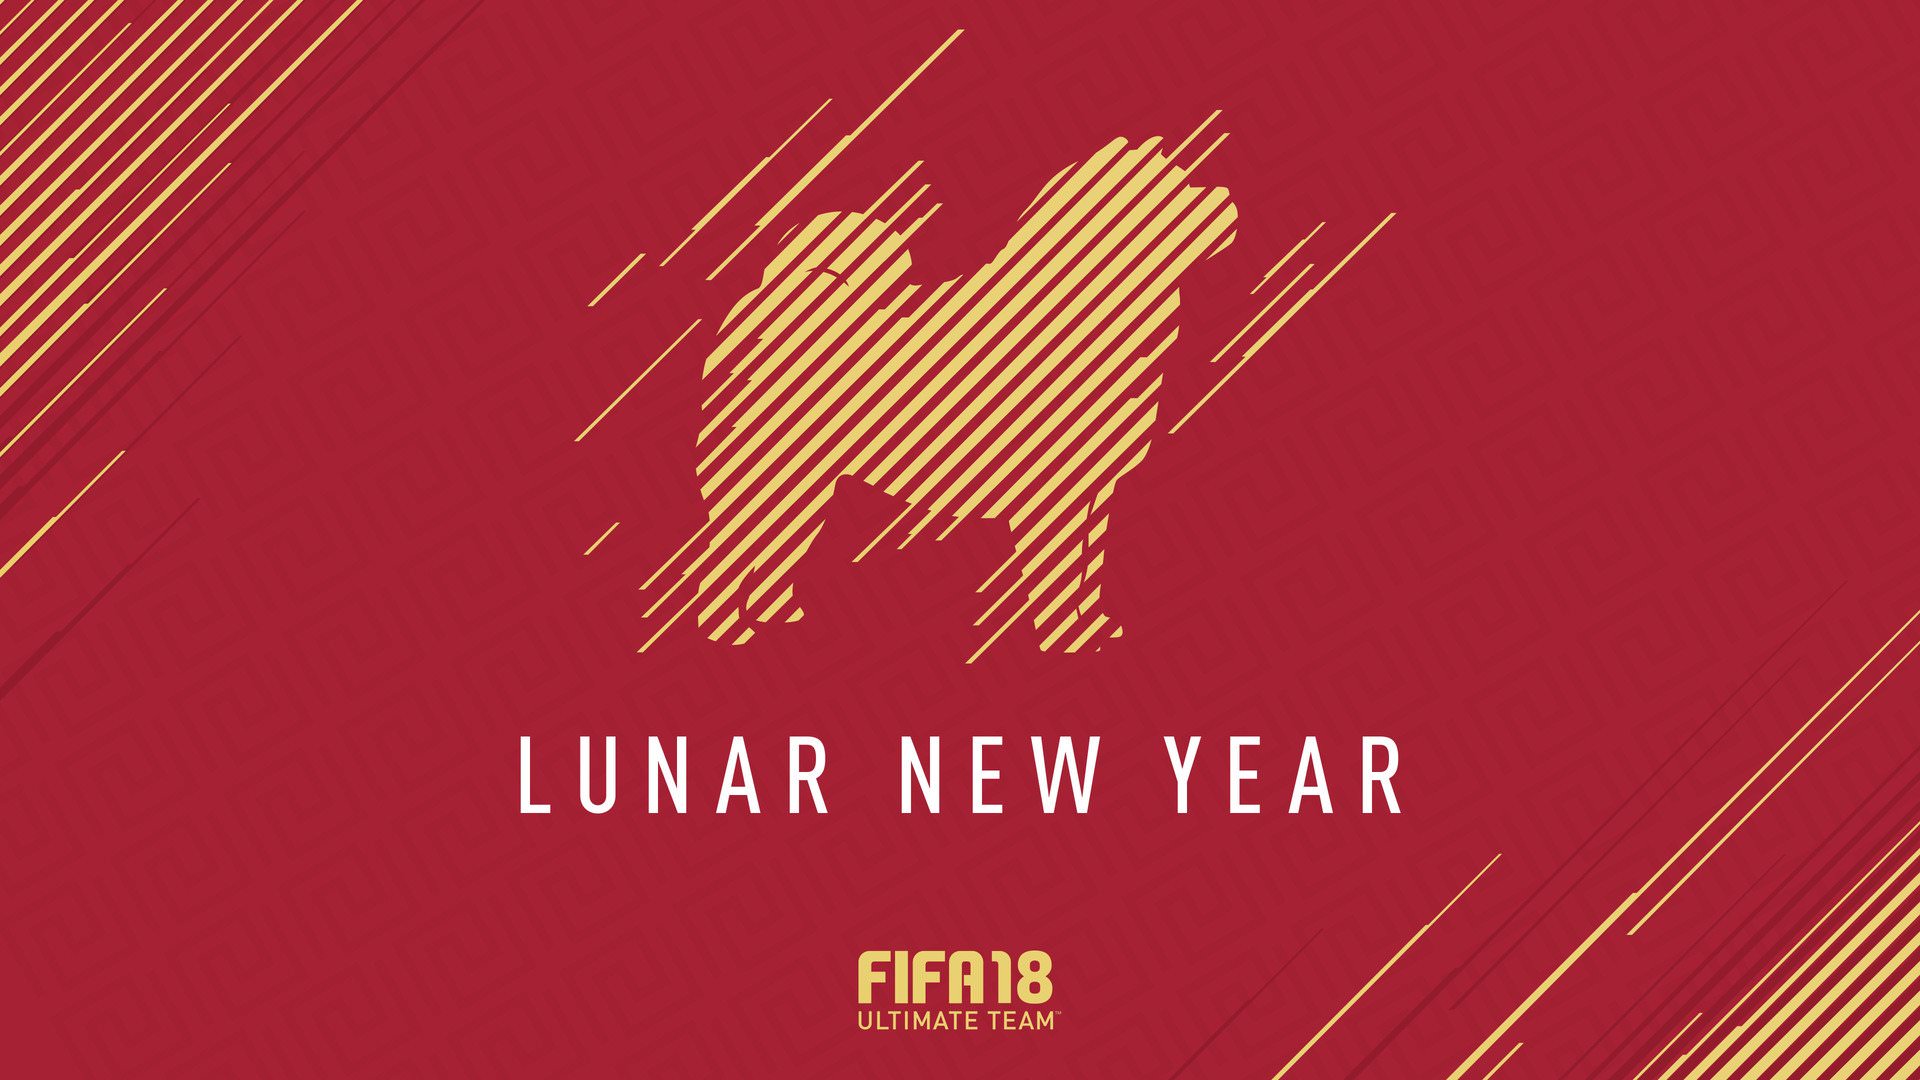 FIFA 18 – Lunar New Year Celebration